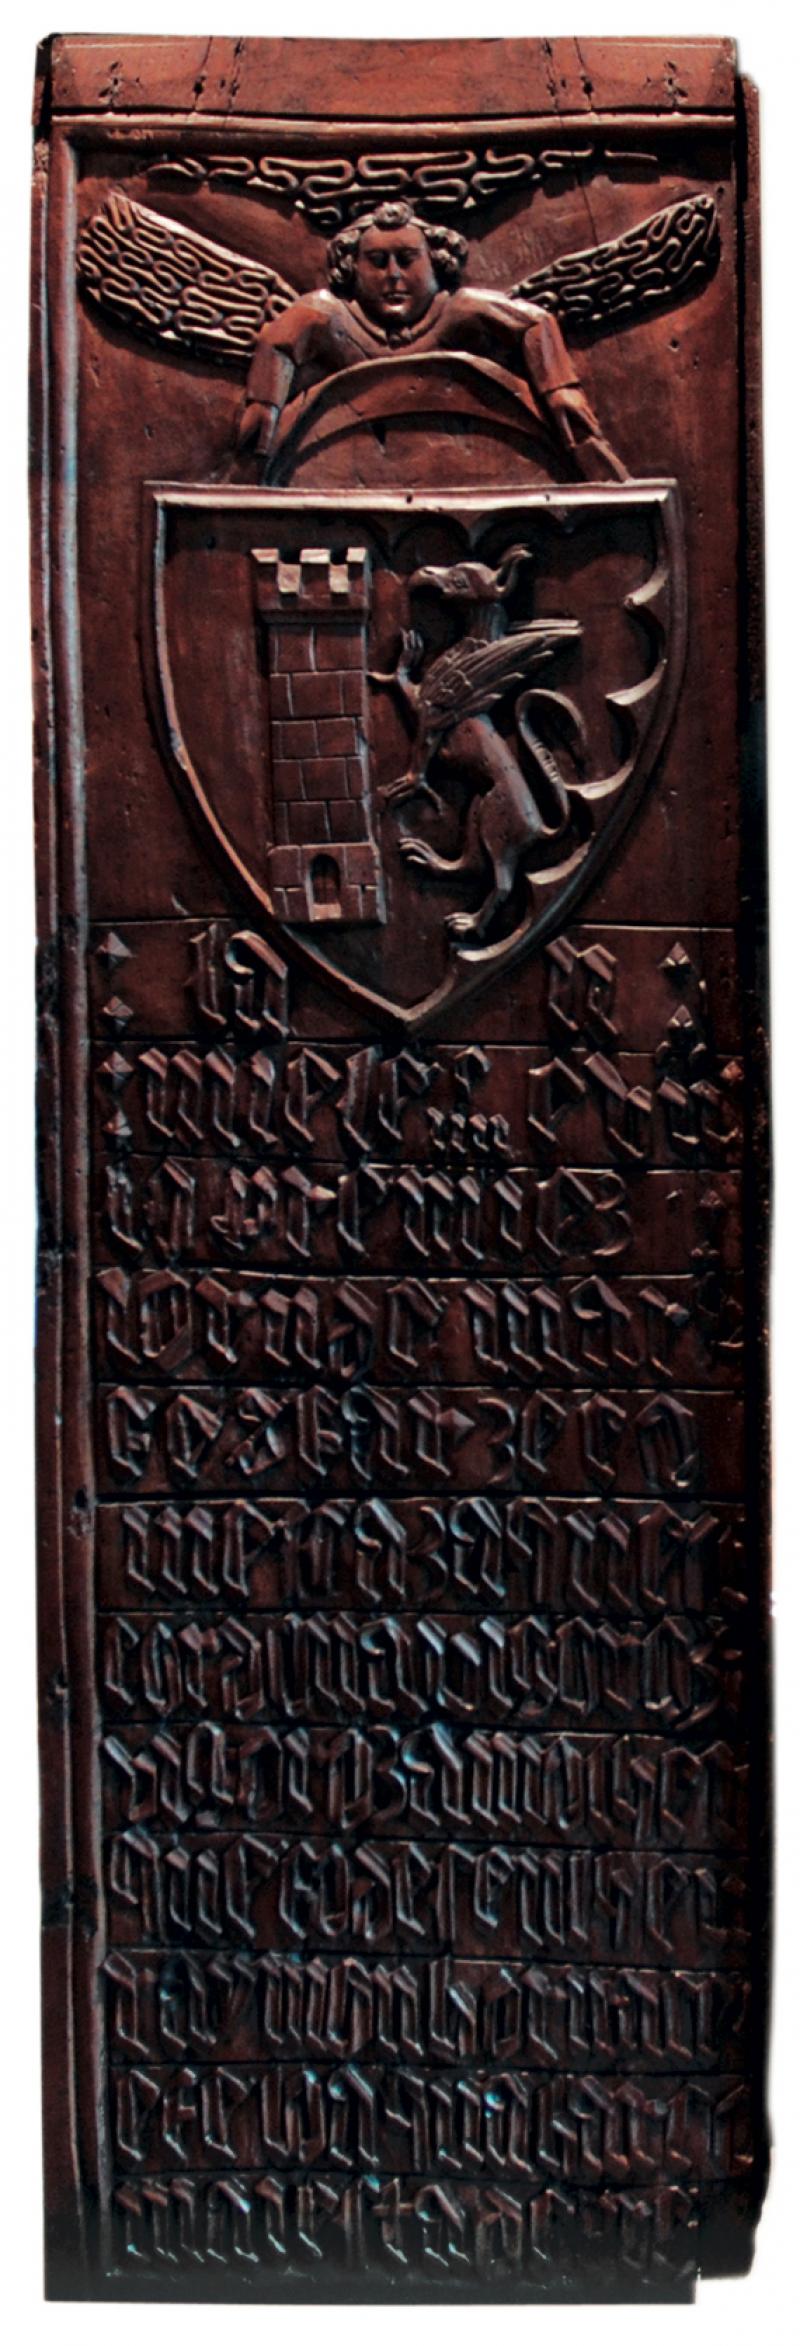 Panneau en bois historié 1er mars 1407 et sculpté avec inscription en occitan, conservé au Musée Fenaille